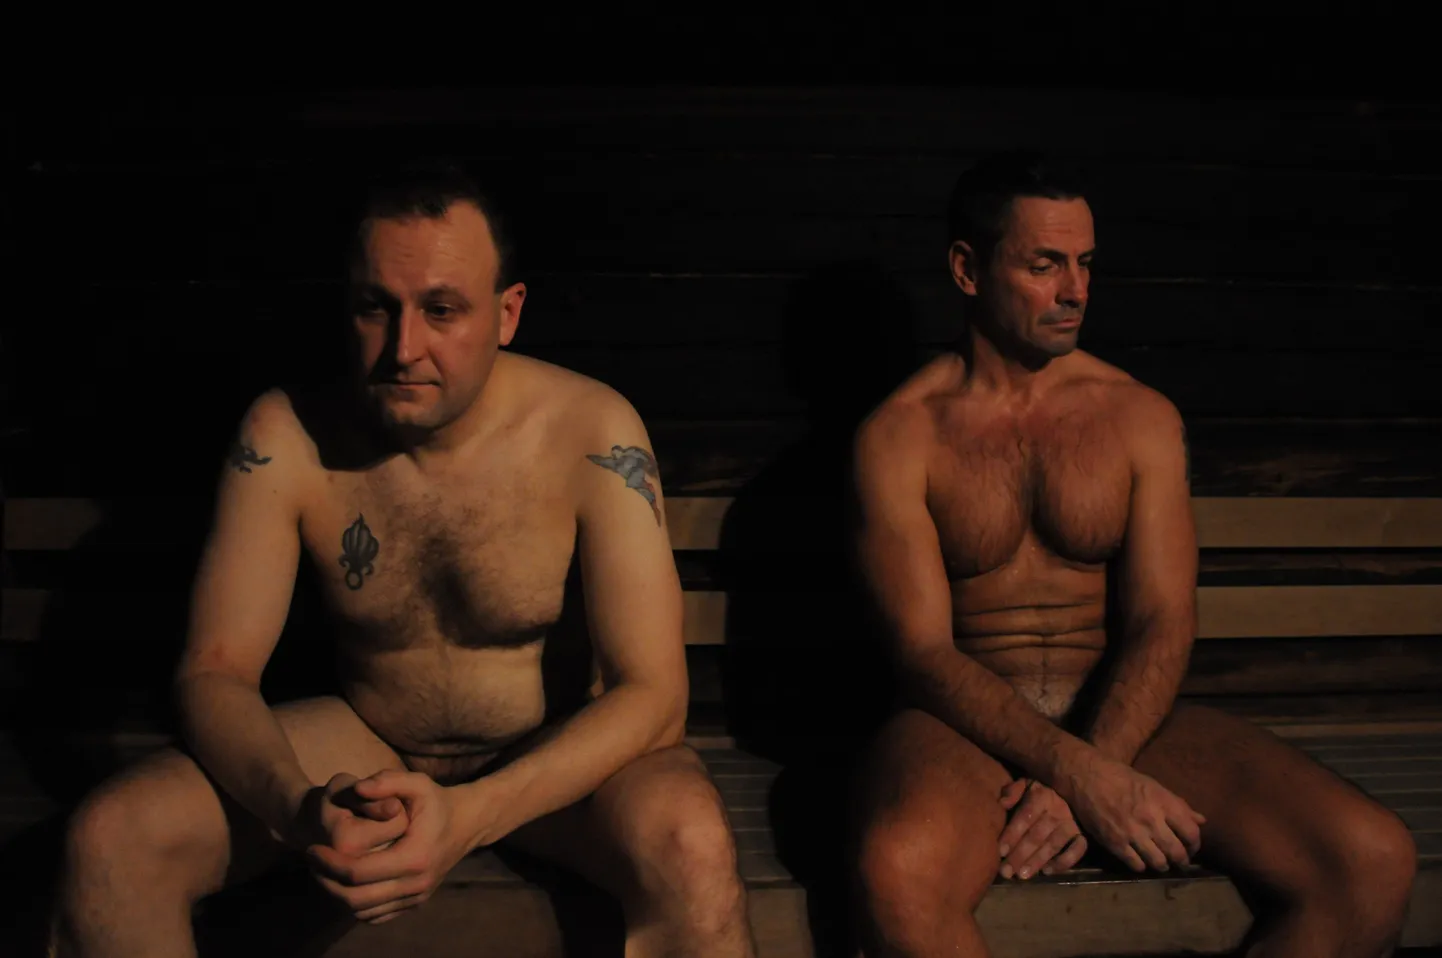 Filmis "Eluaur" räägivad Soome mehed intiimsetest teemadest.